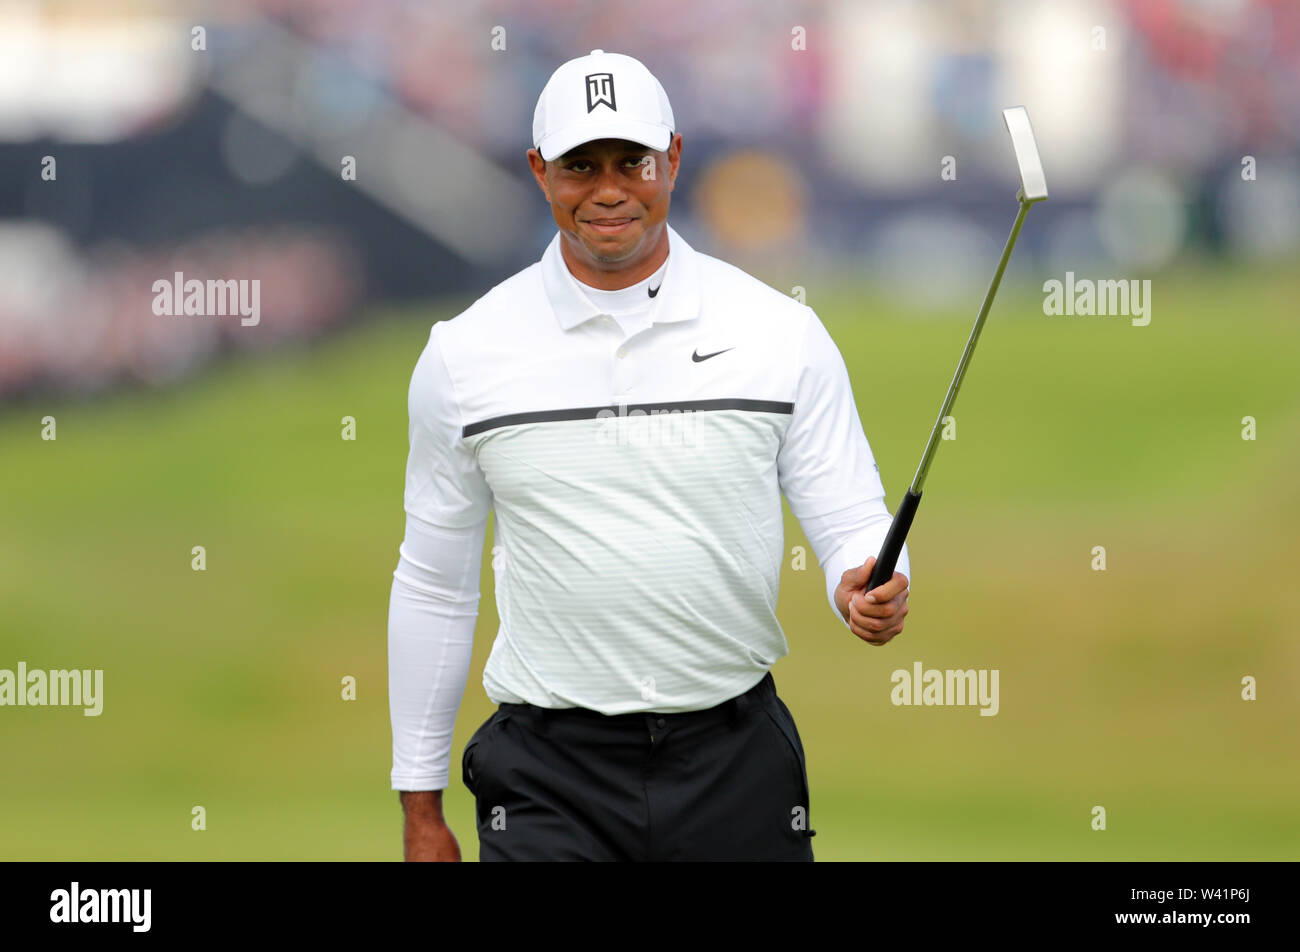 USA's Tiger Woods célèbre son birdie au 1er au cours de la deuxième journée de l'Open Championship 2019 au Club de golf Royal Portrush. Banque D'Images